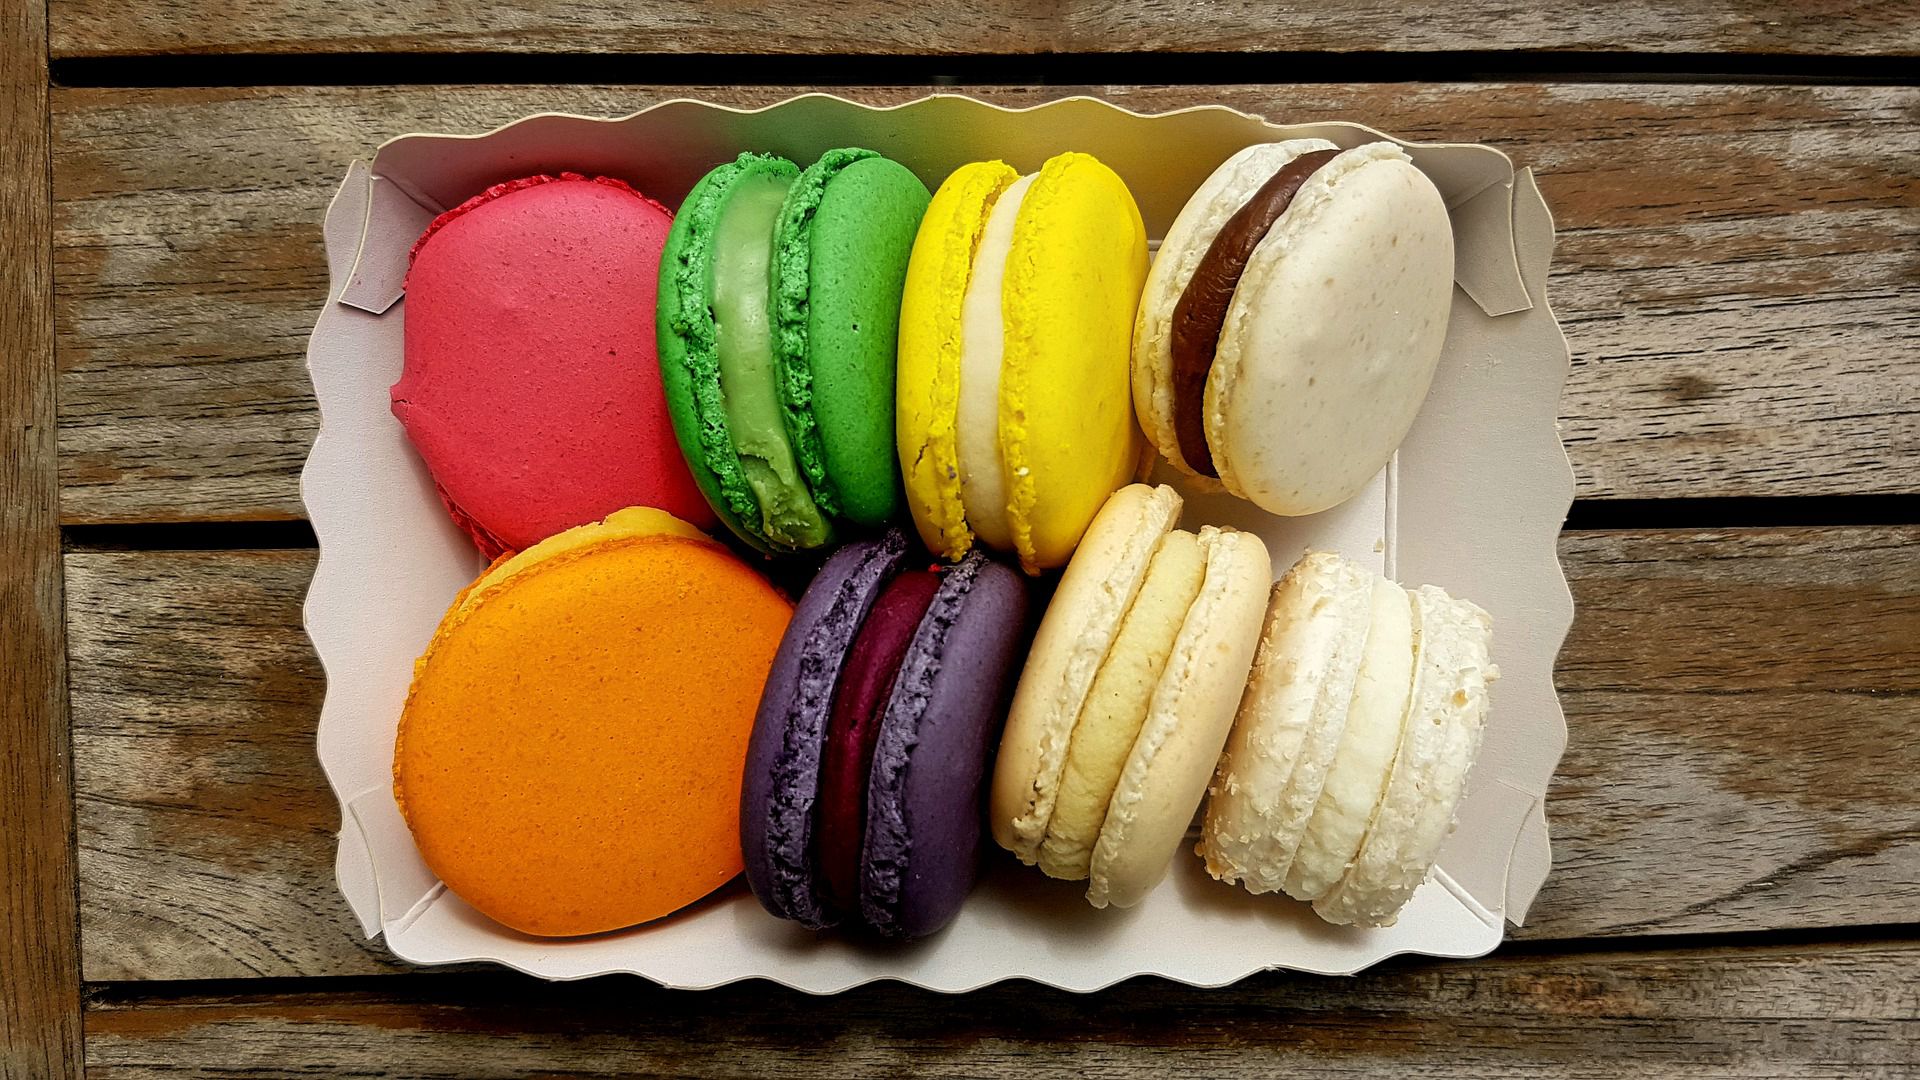 制作马卡龙甜品简单方法 马卡龙具有法国式浪漫色彩的甜点